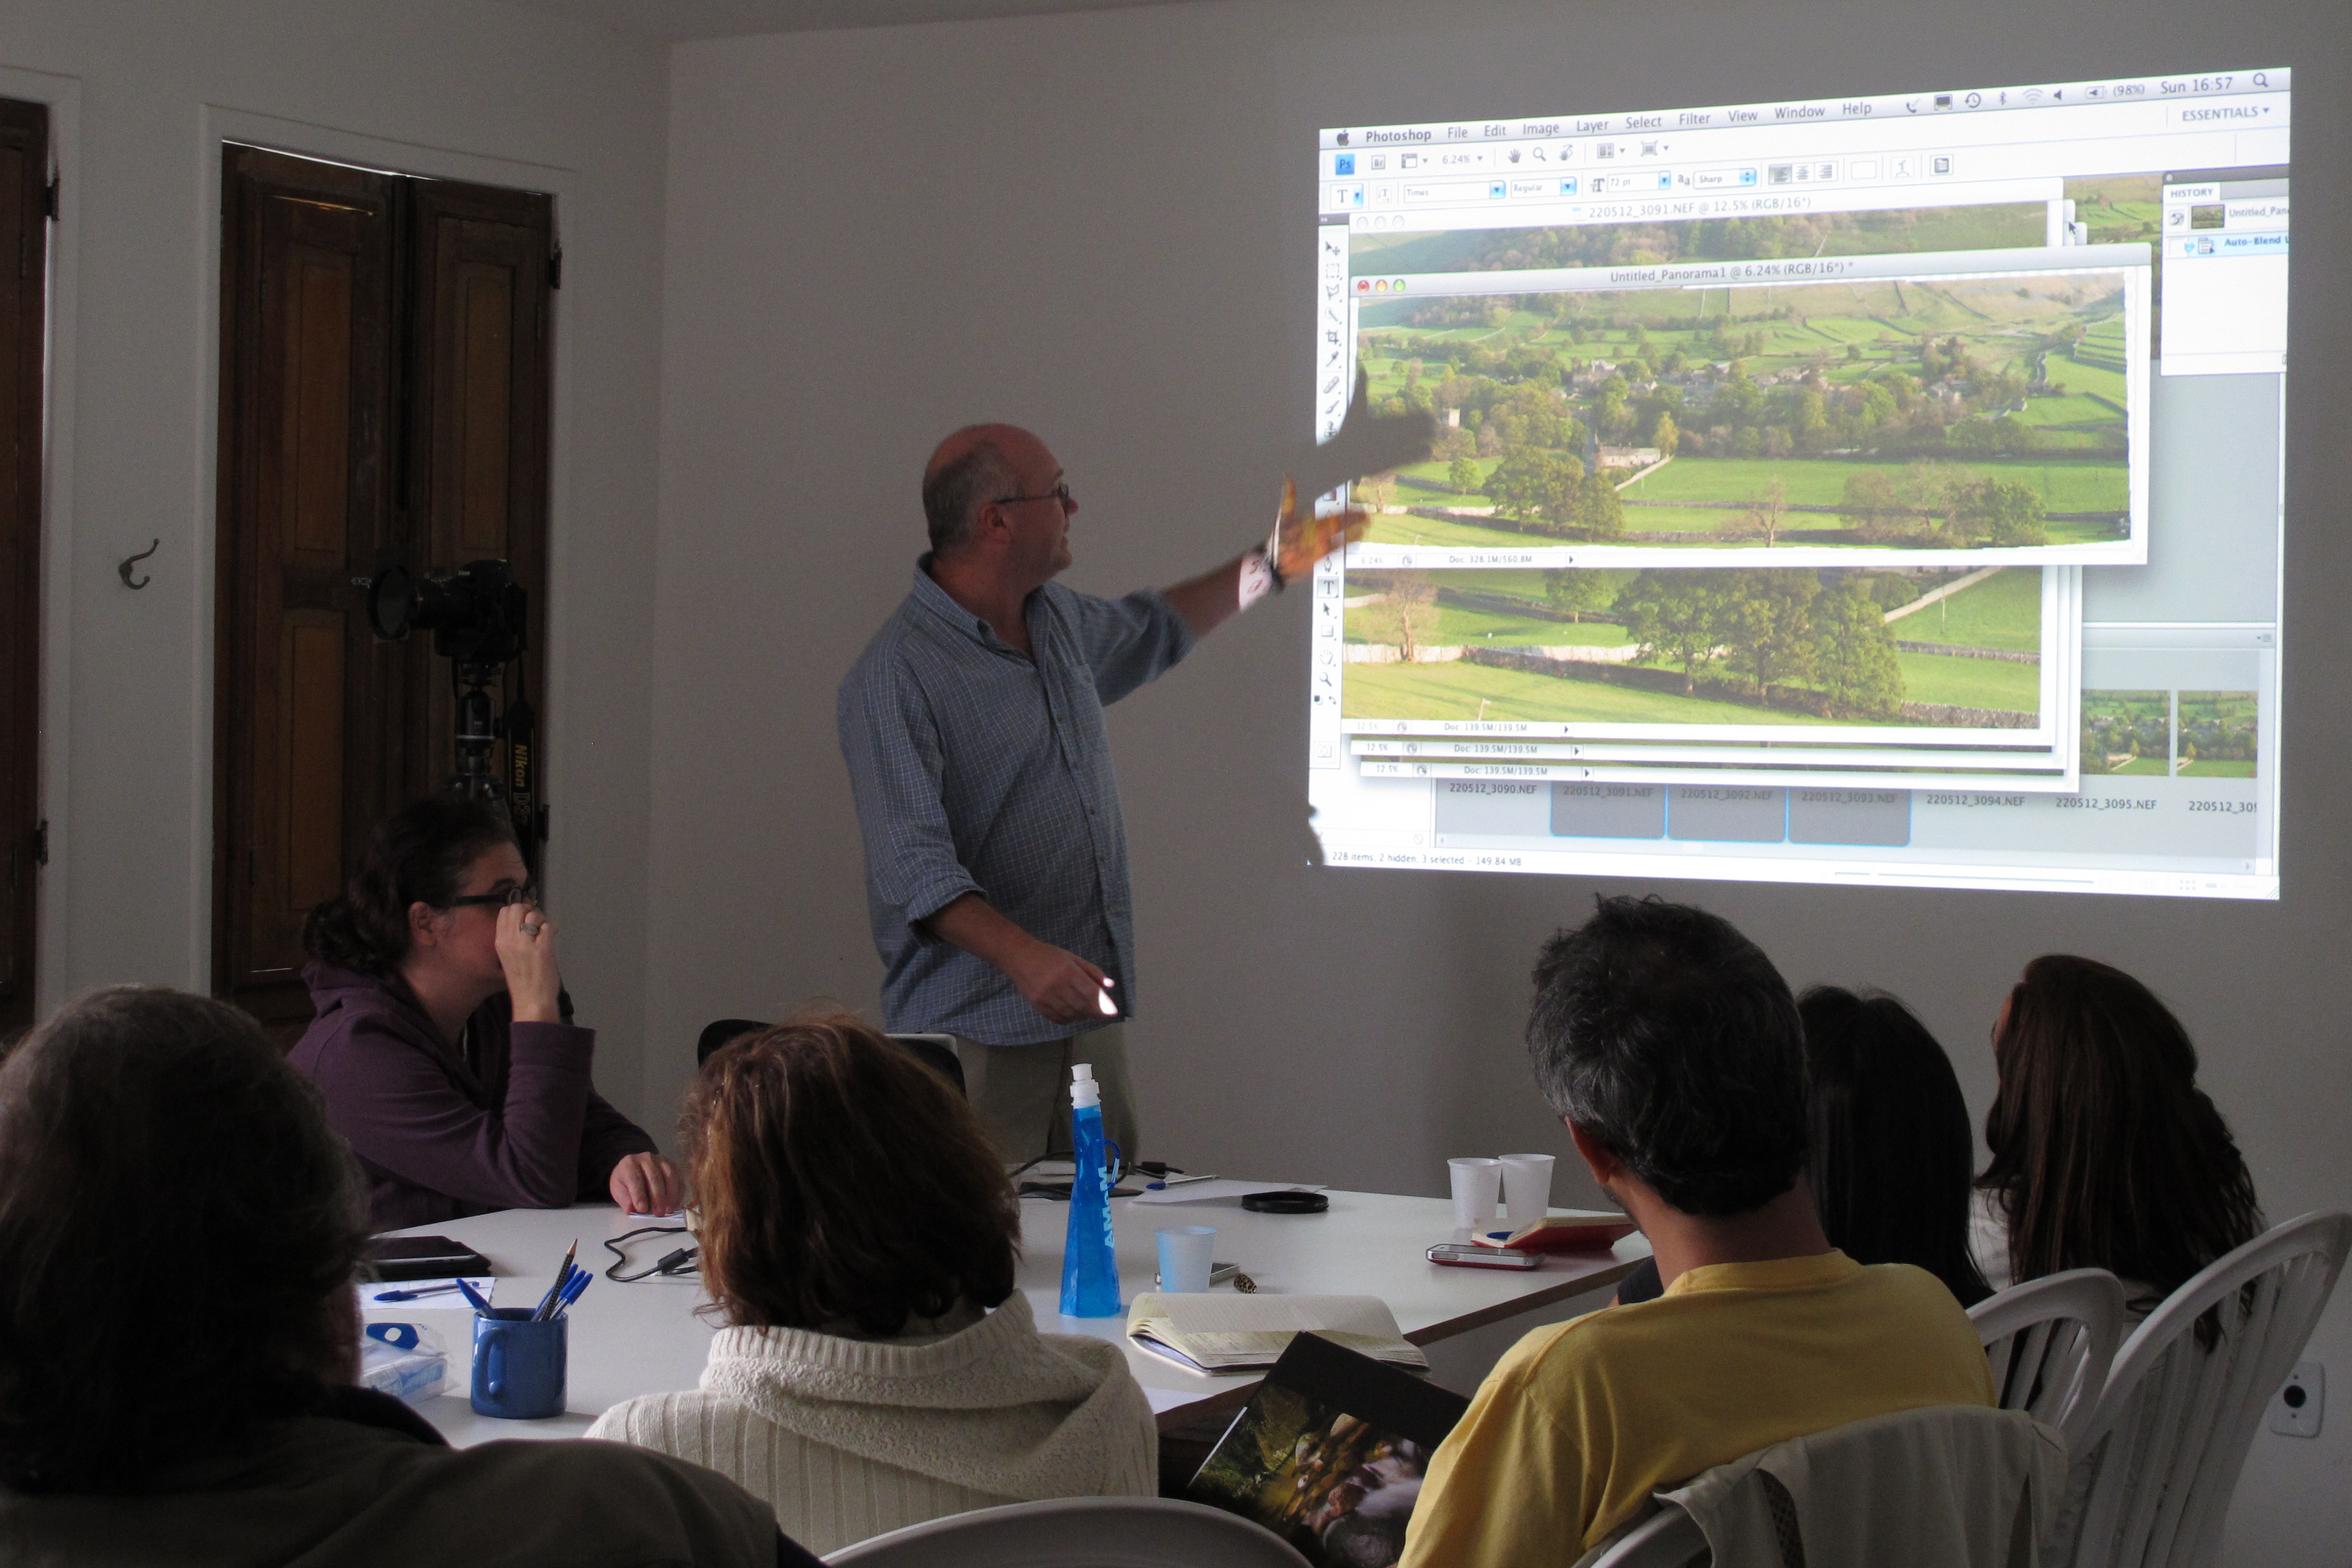 Jeremy Walker teaching a workshop in class